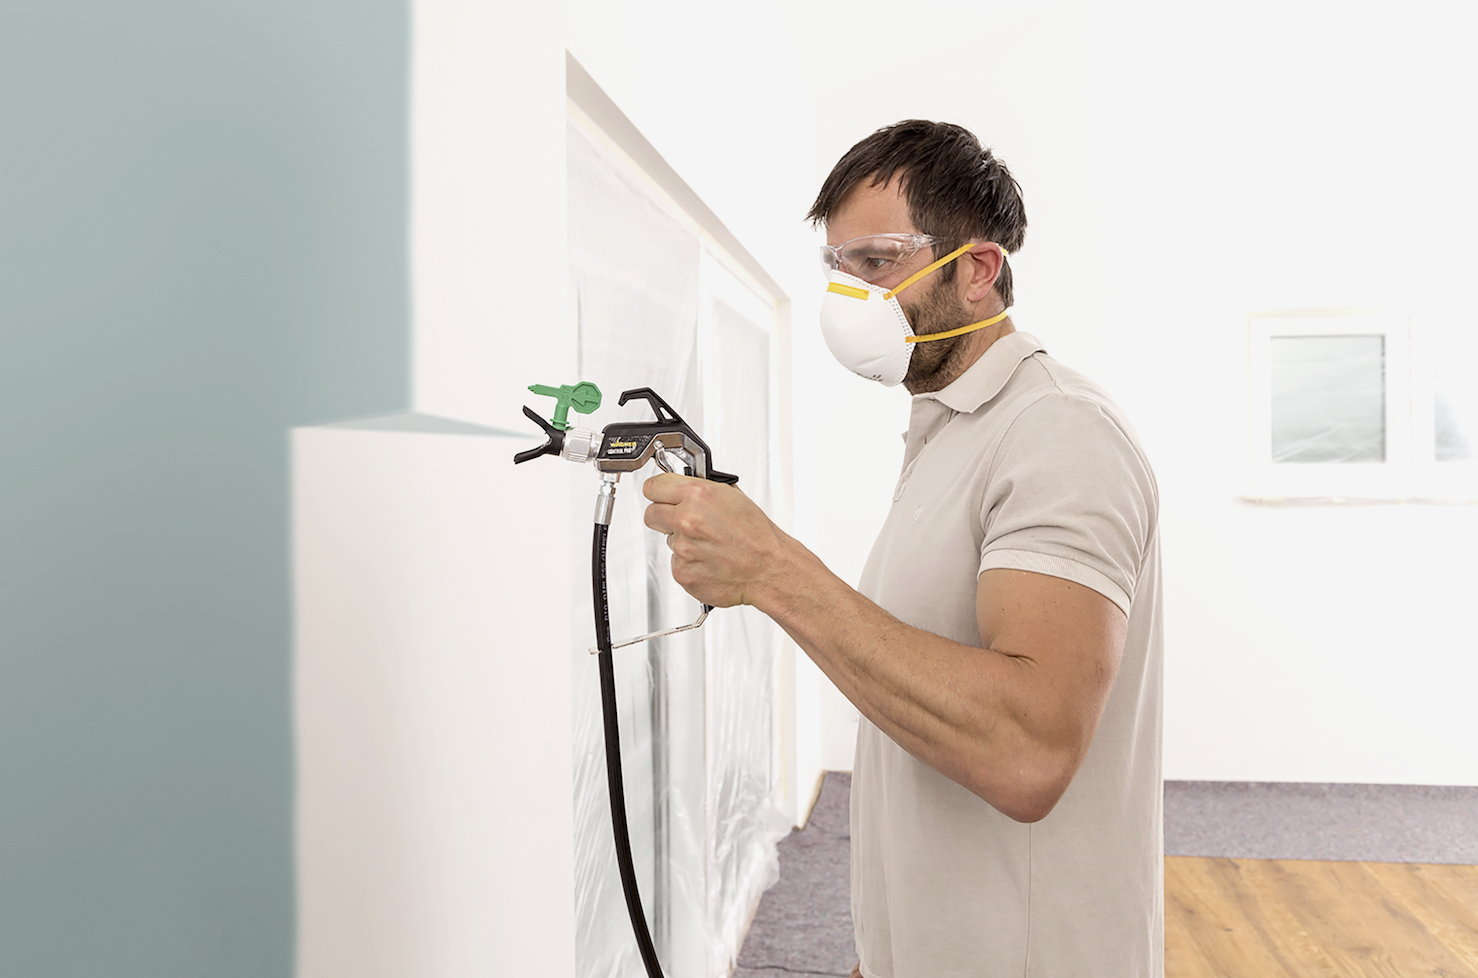 Importancia de la protección respiratoria en trabajos de pintura